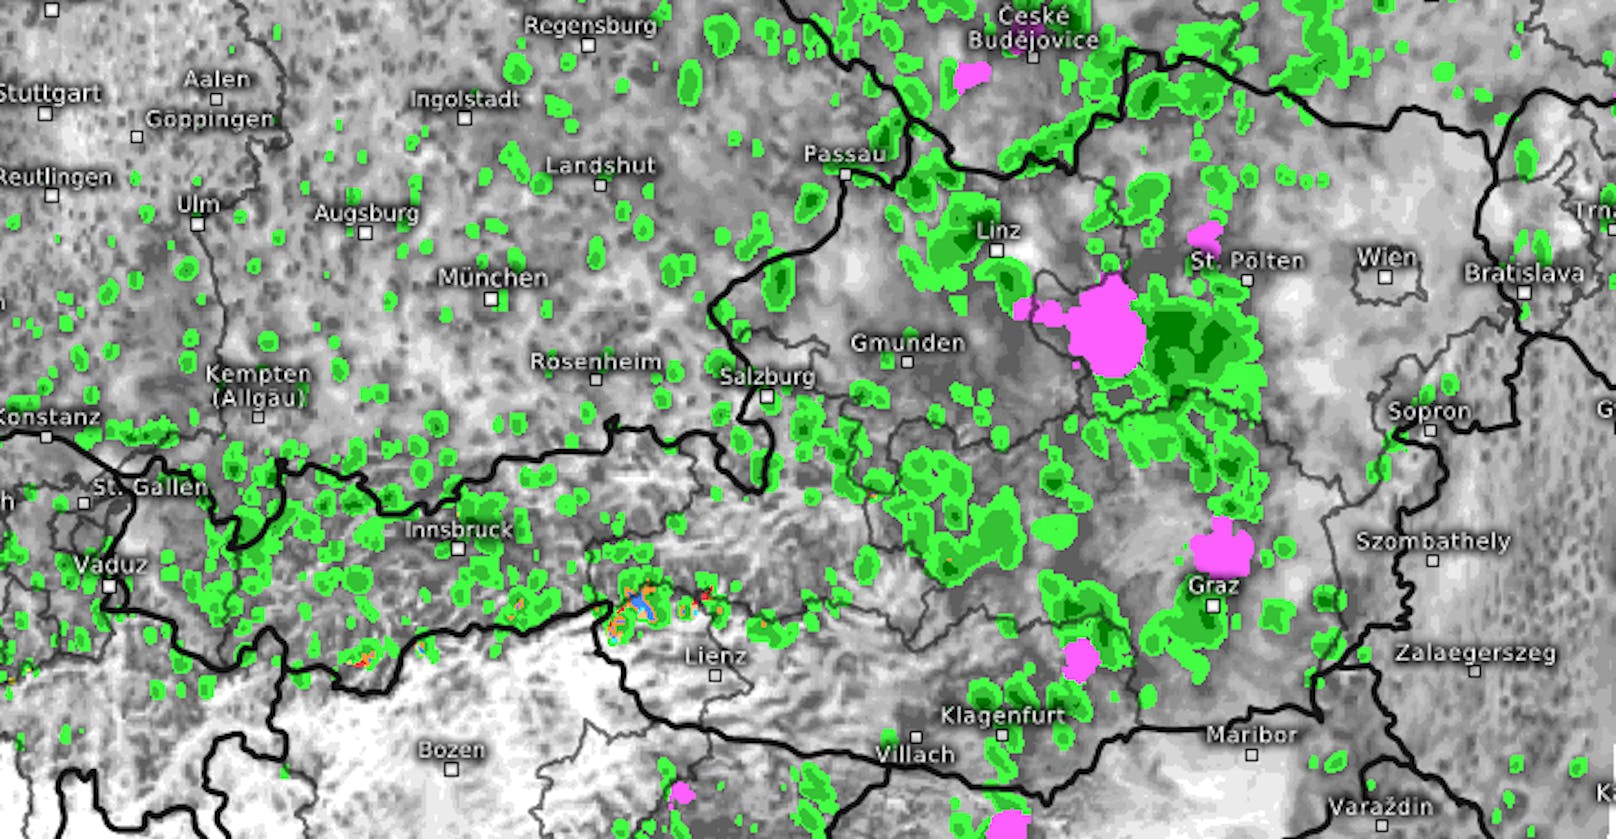 "Signifikantes Wetter" über Österreich. Prognose für 16 Uhr, Freitag. Die Karte zeigt Regen (grün) und Gewitter (pink).